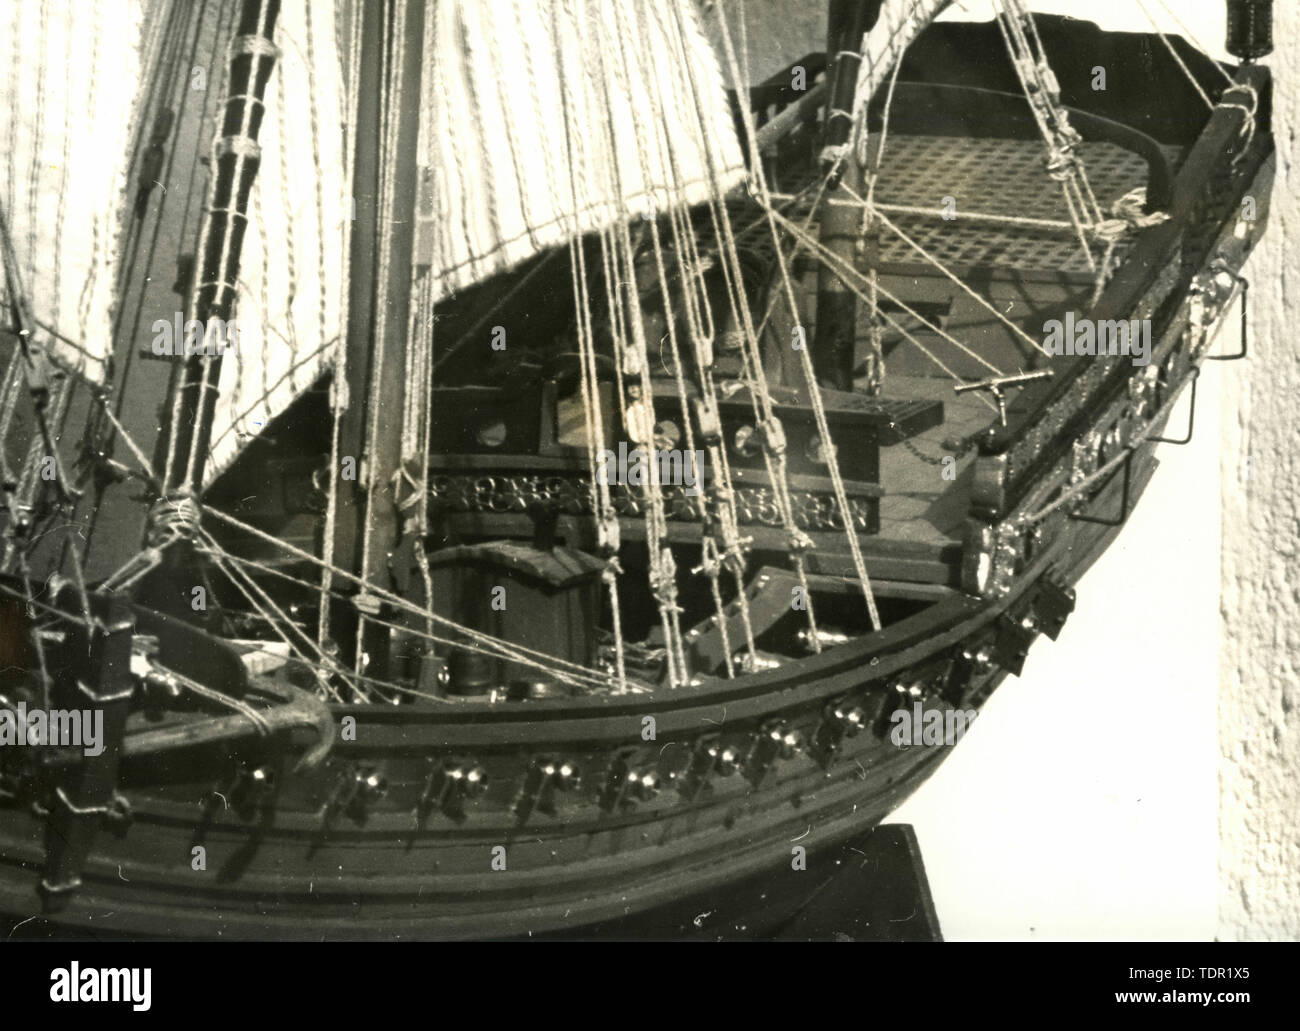 Modèle de bâtiment navire : Le chebec français indiscrète, 1750 Banque D'Images